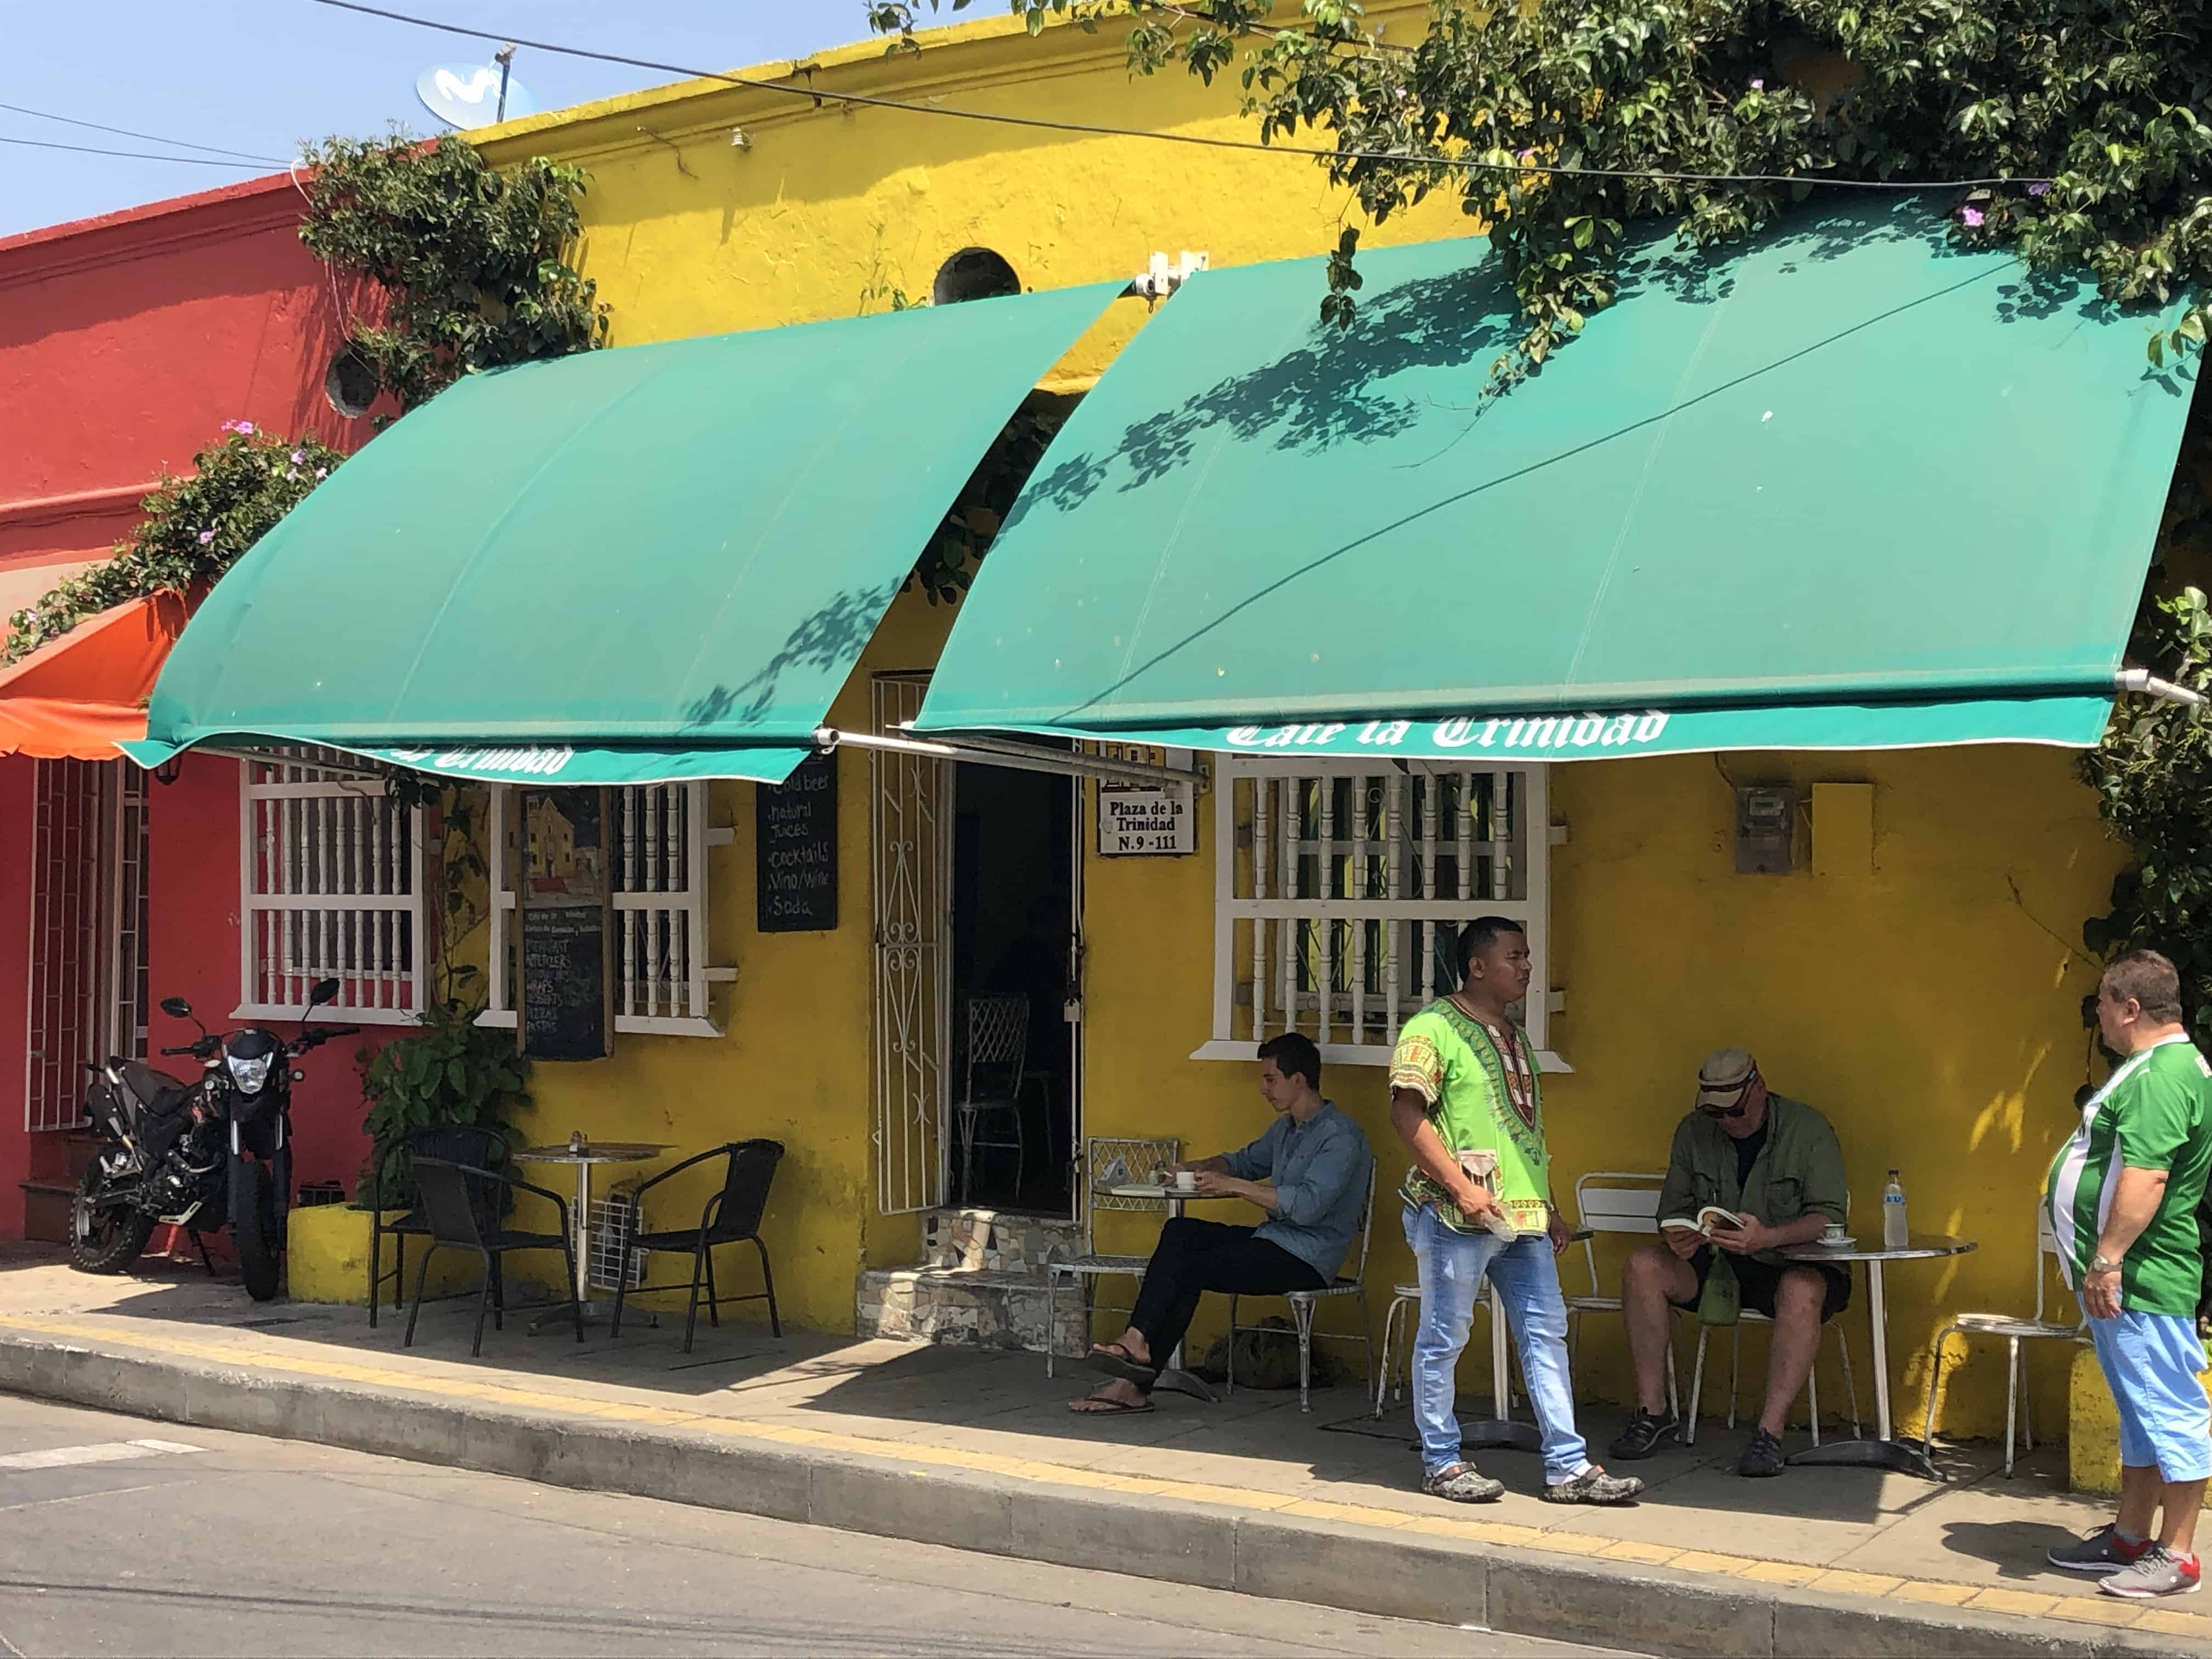 Café de la Trinidad in Getsemaní, Cartagena, Colombia